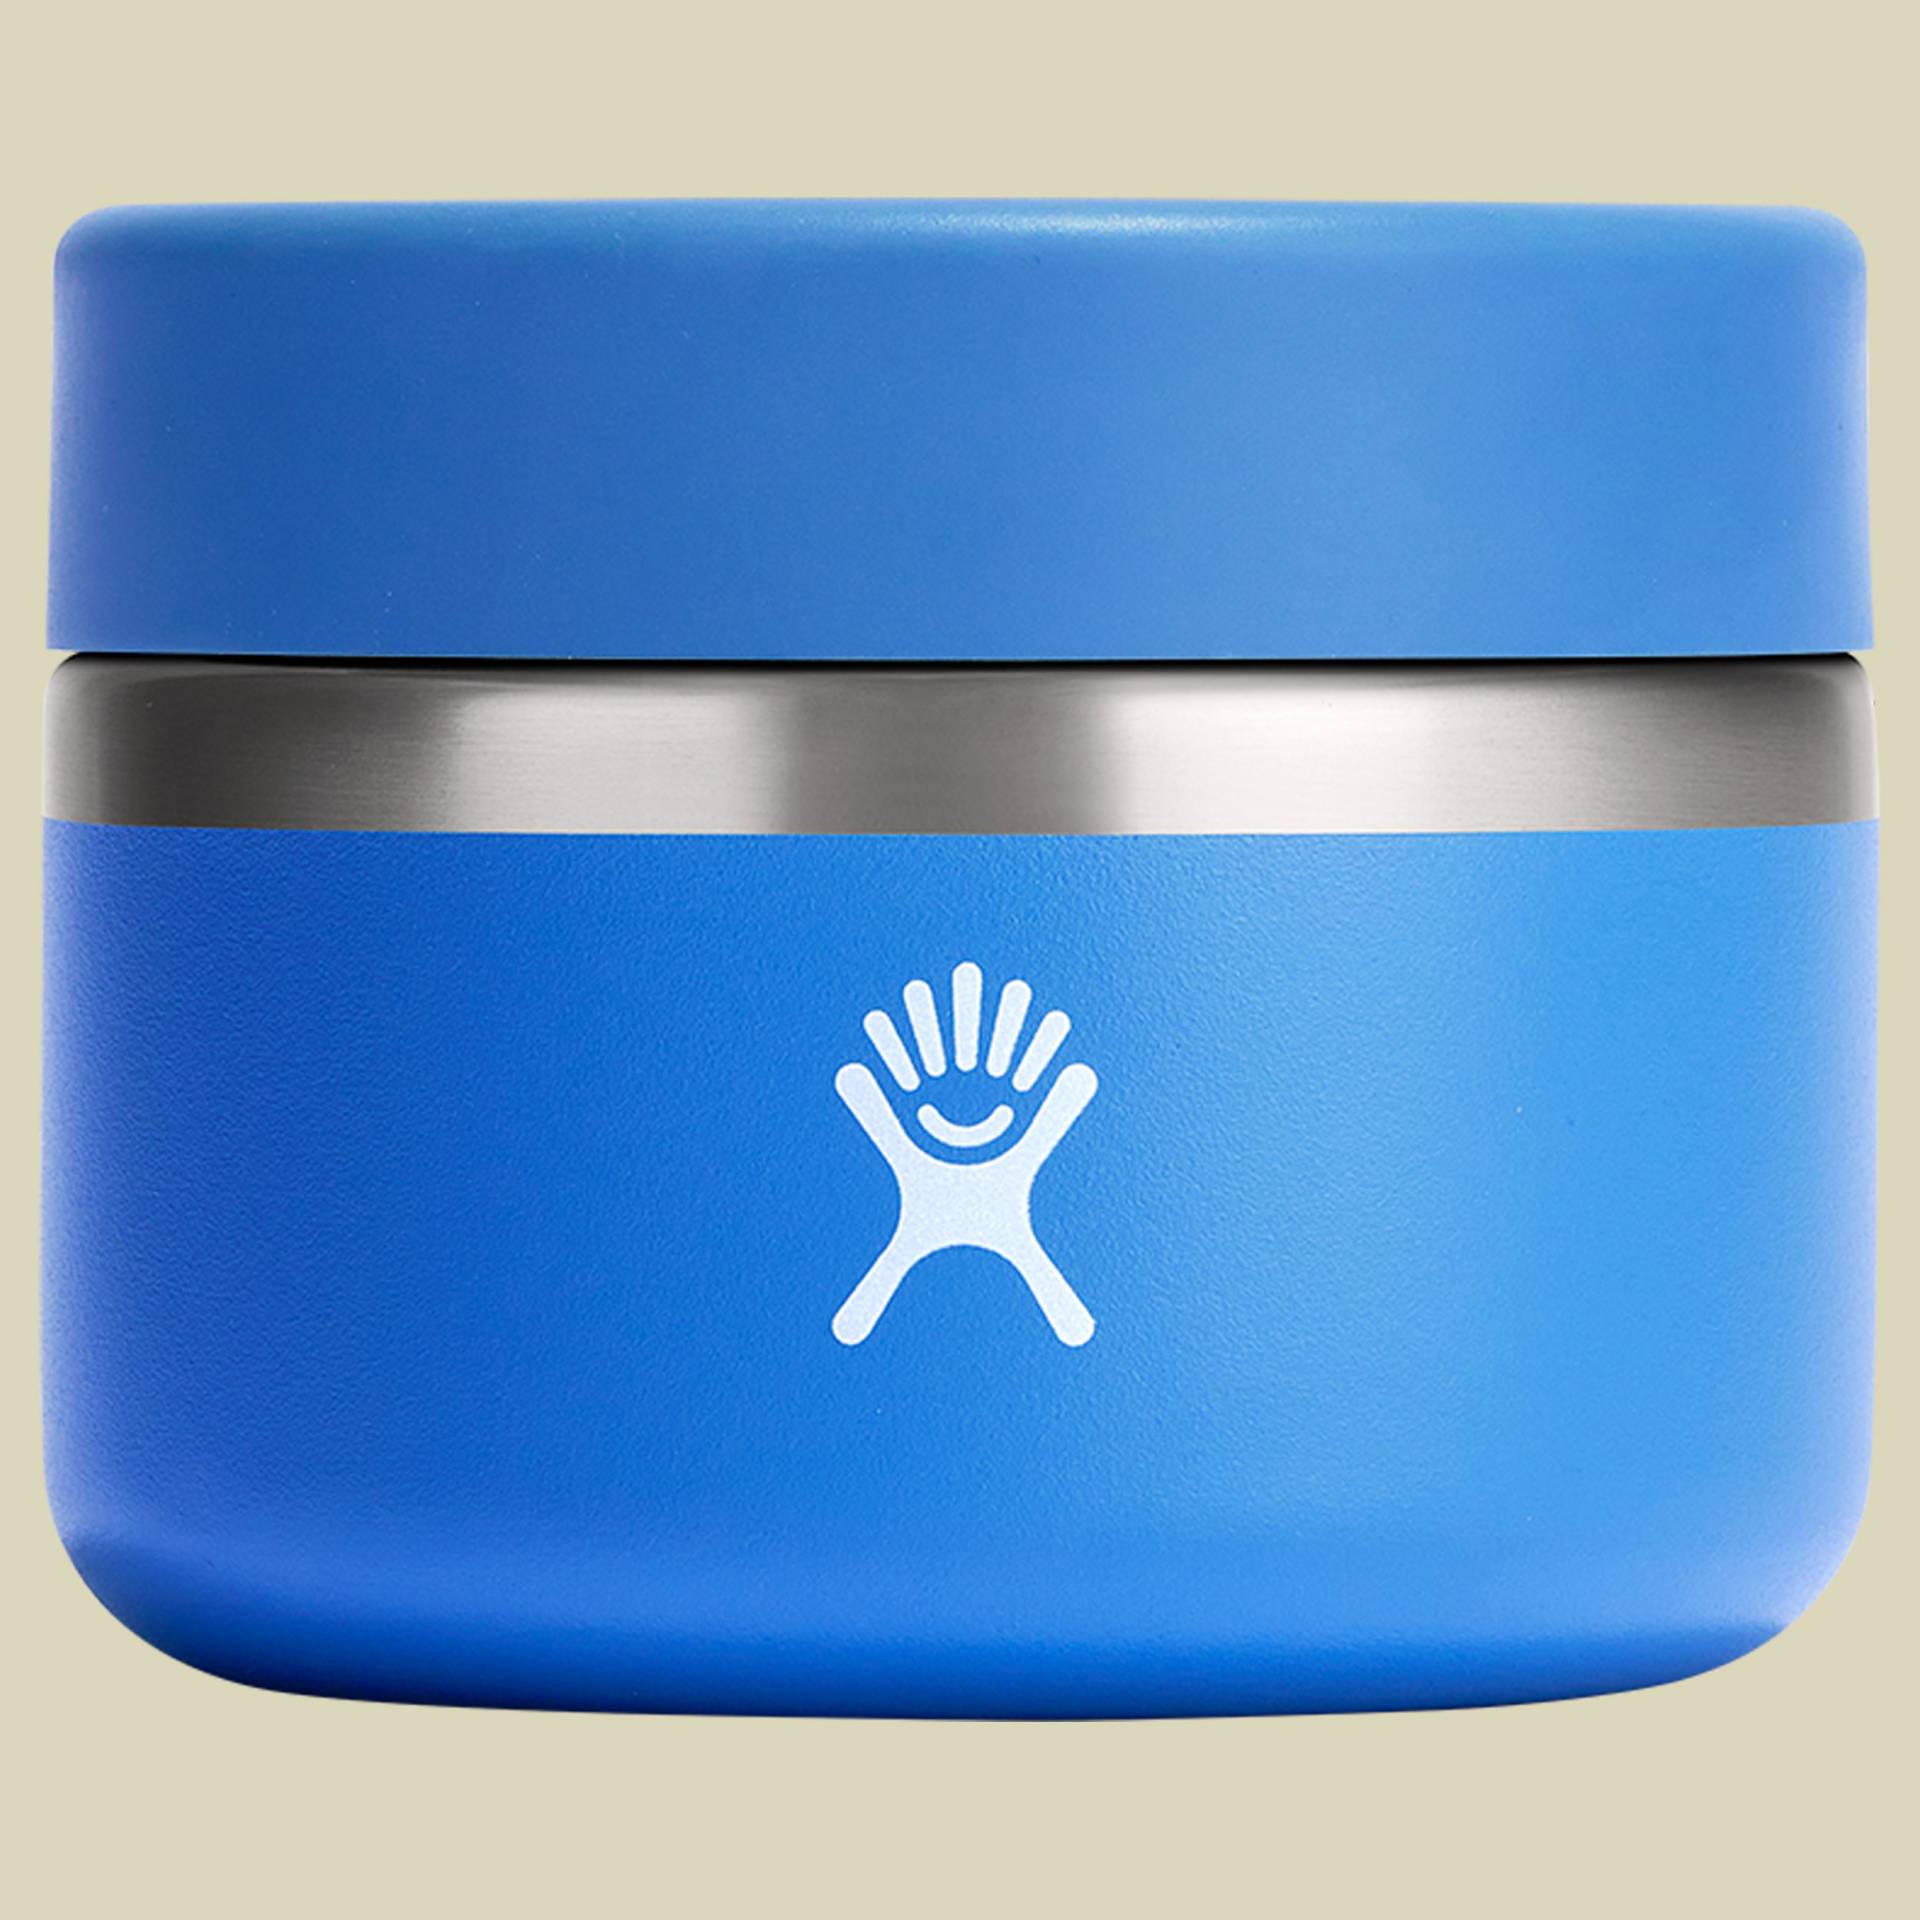 12 oz Insulated Food Jar blau 355 - Farbe cascade von Hydro Flask